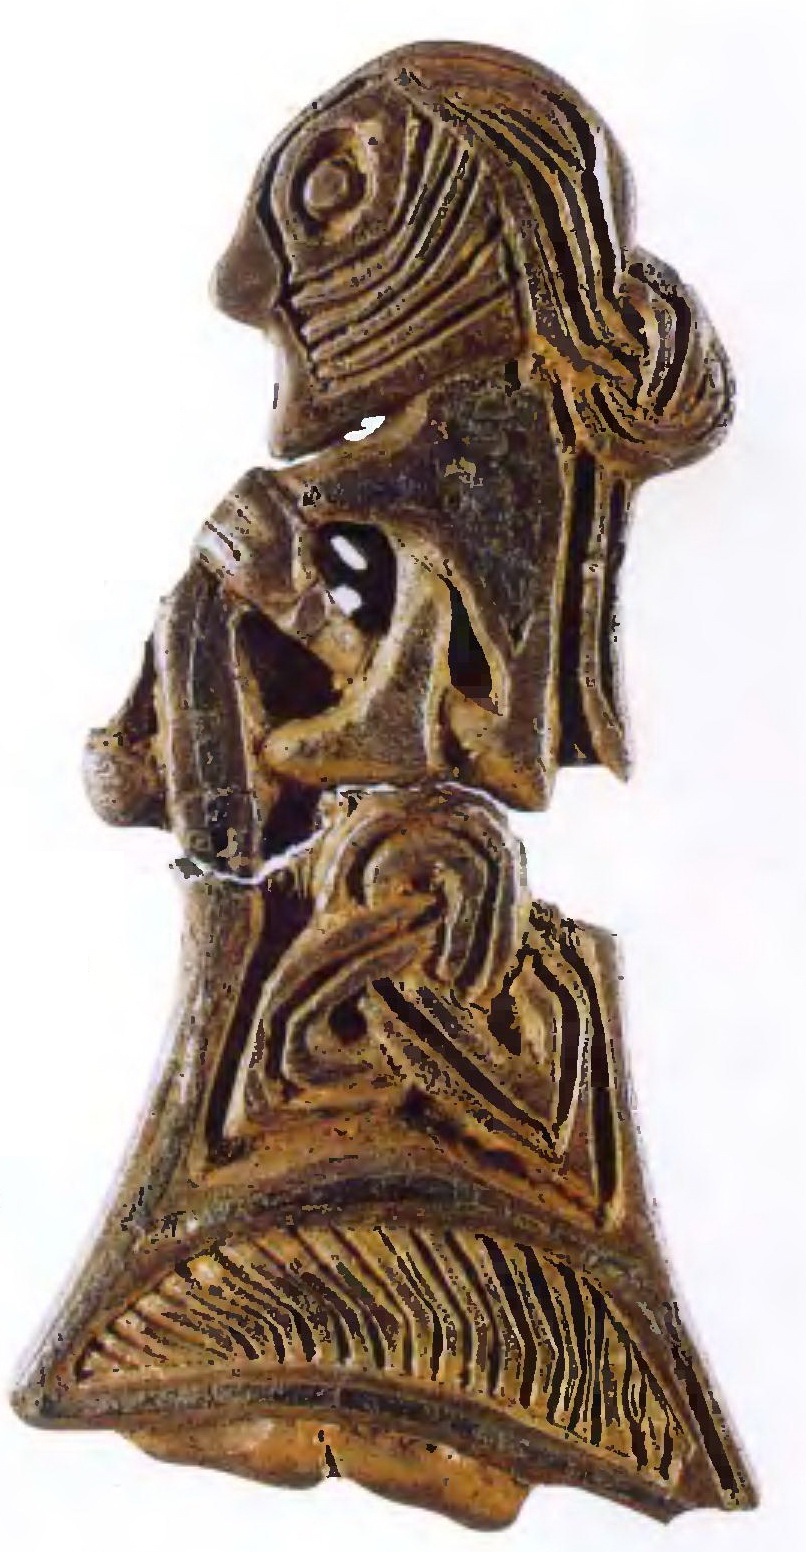 Перед нами датский амулет X столетия с изображением женщины-скандинавки, он имеет 4 см в высоту и выполнен из серебра, покрытого позолотой и эмалью. На женщине украшенное платье, надетое, по-видимому, поверх плиссированной рубахи, левая рука держит шаль, покрывающую плечи фигуры. Длинные волосы расчесаны и завязаны узлом сзади (Государственный музей Дании, Копенгаген).